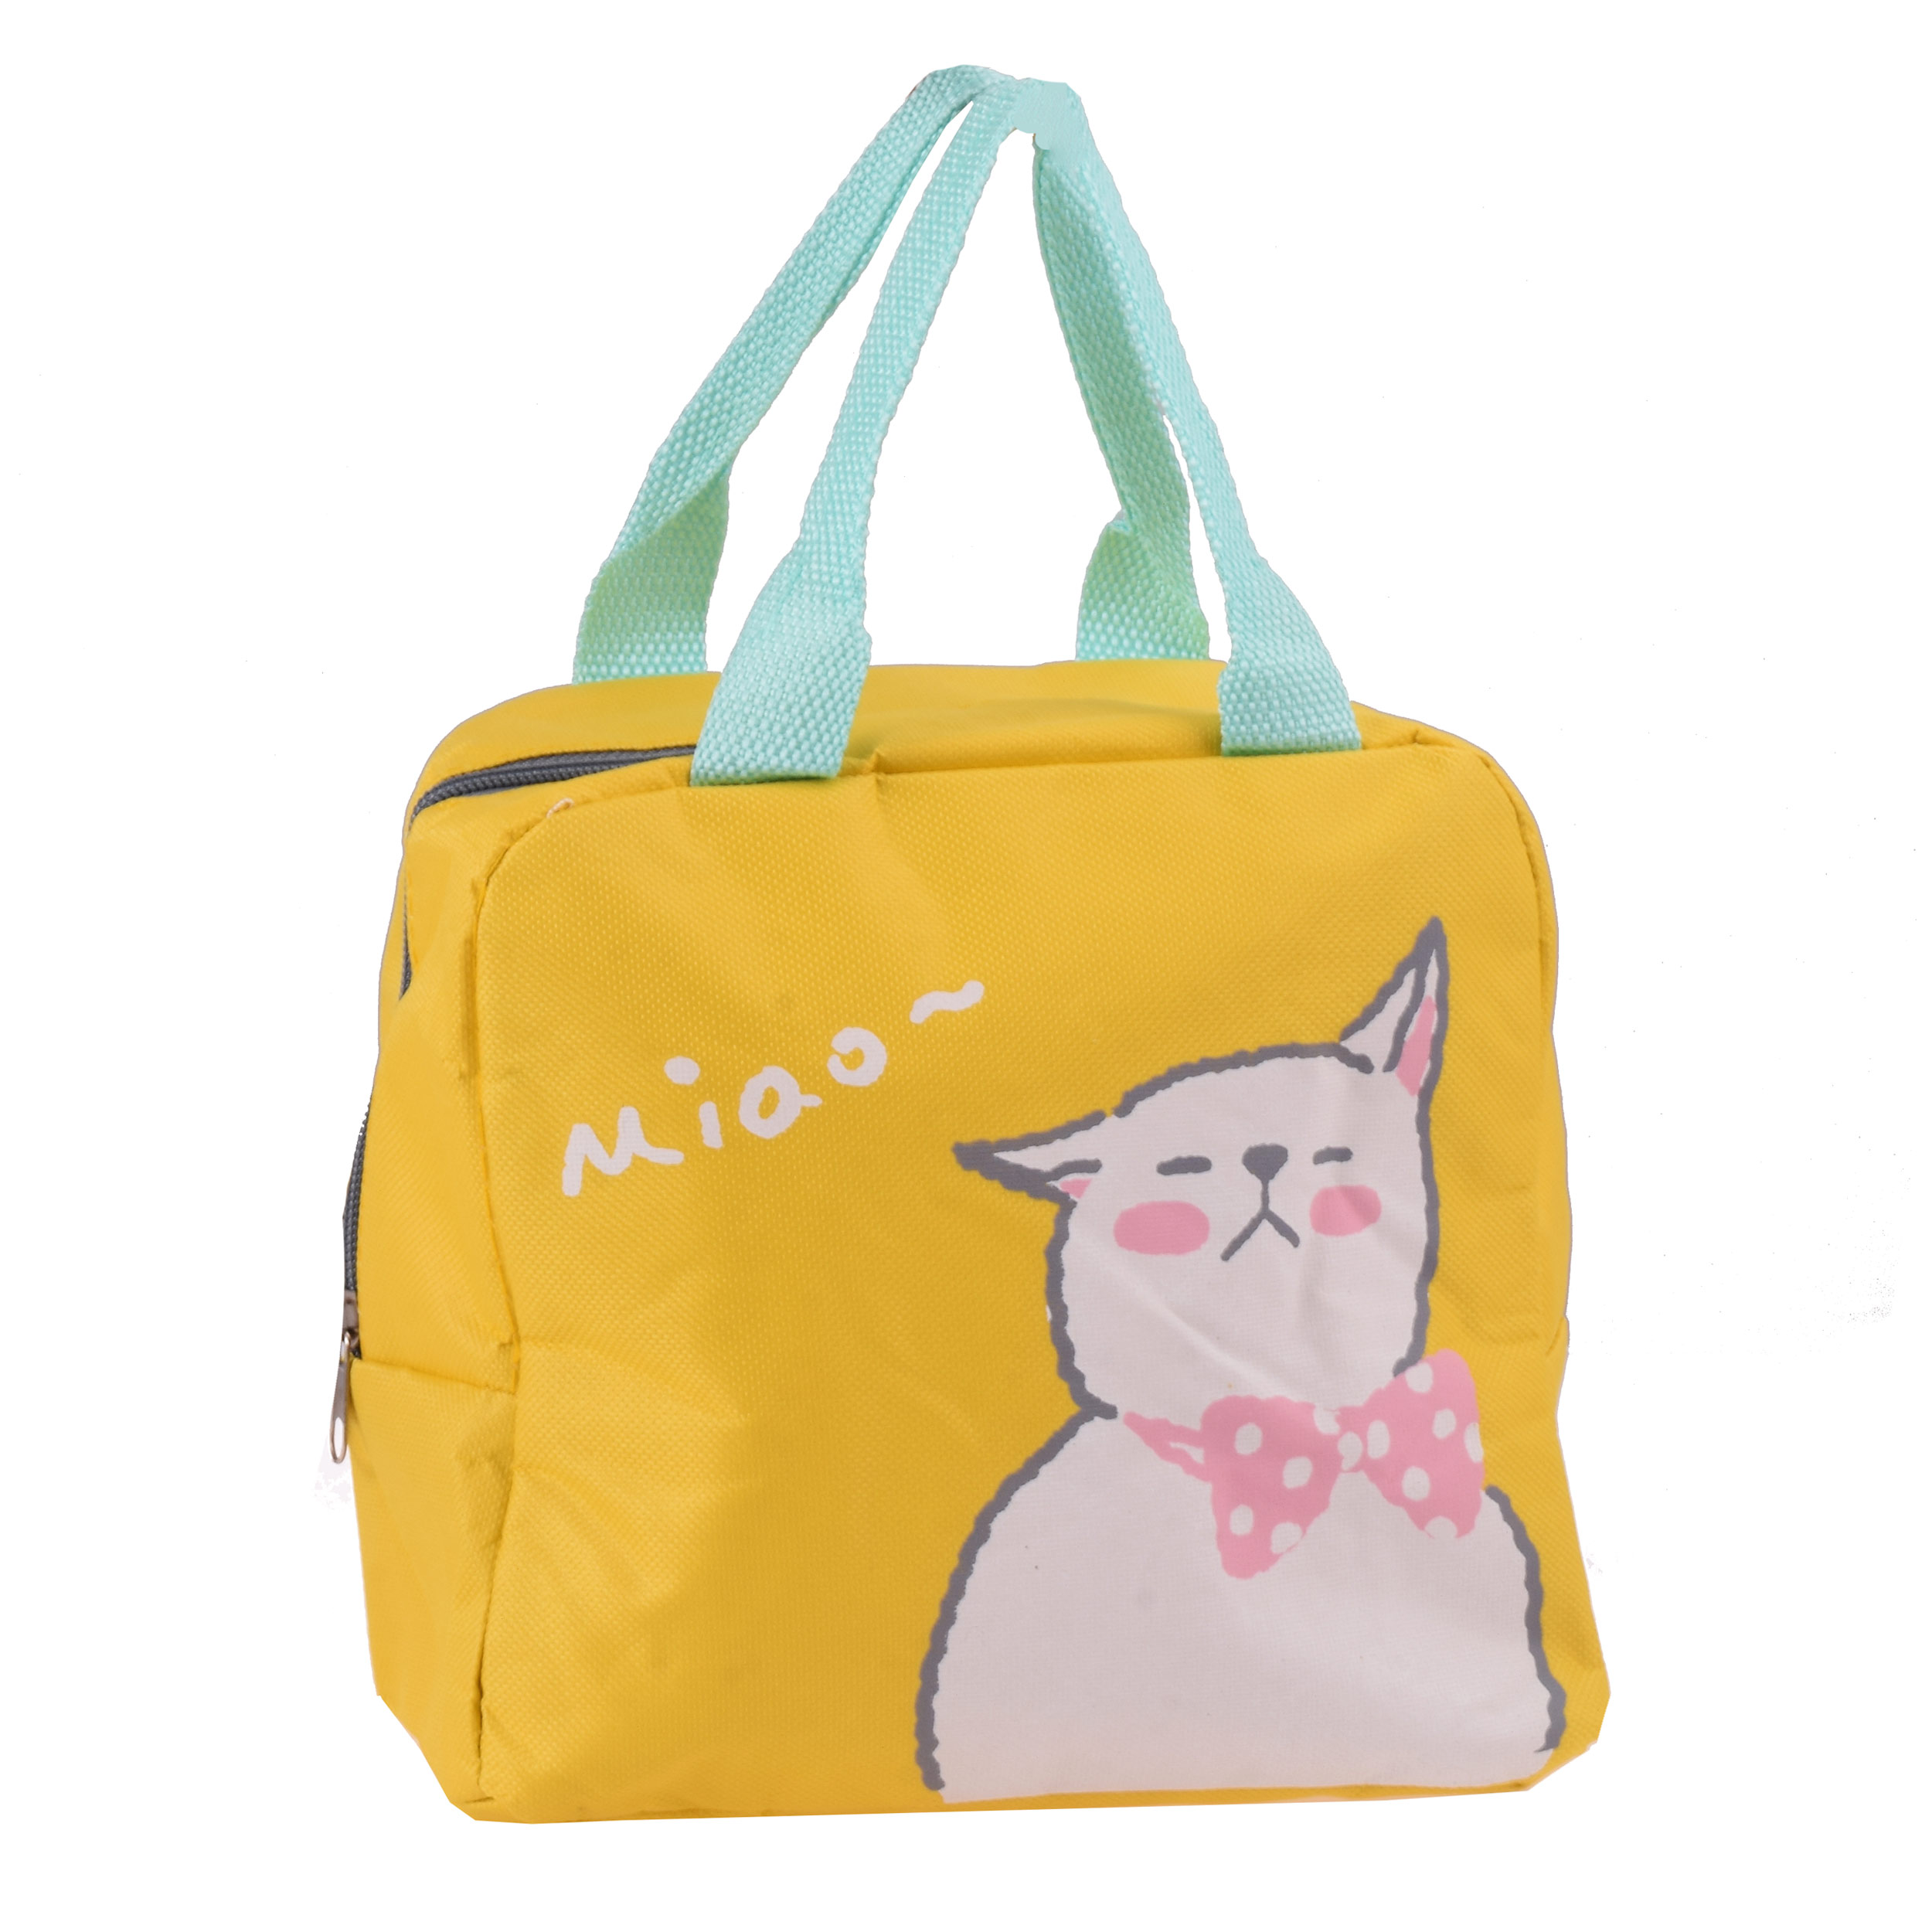 کیف غذا مدل Miao